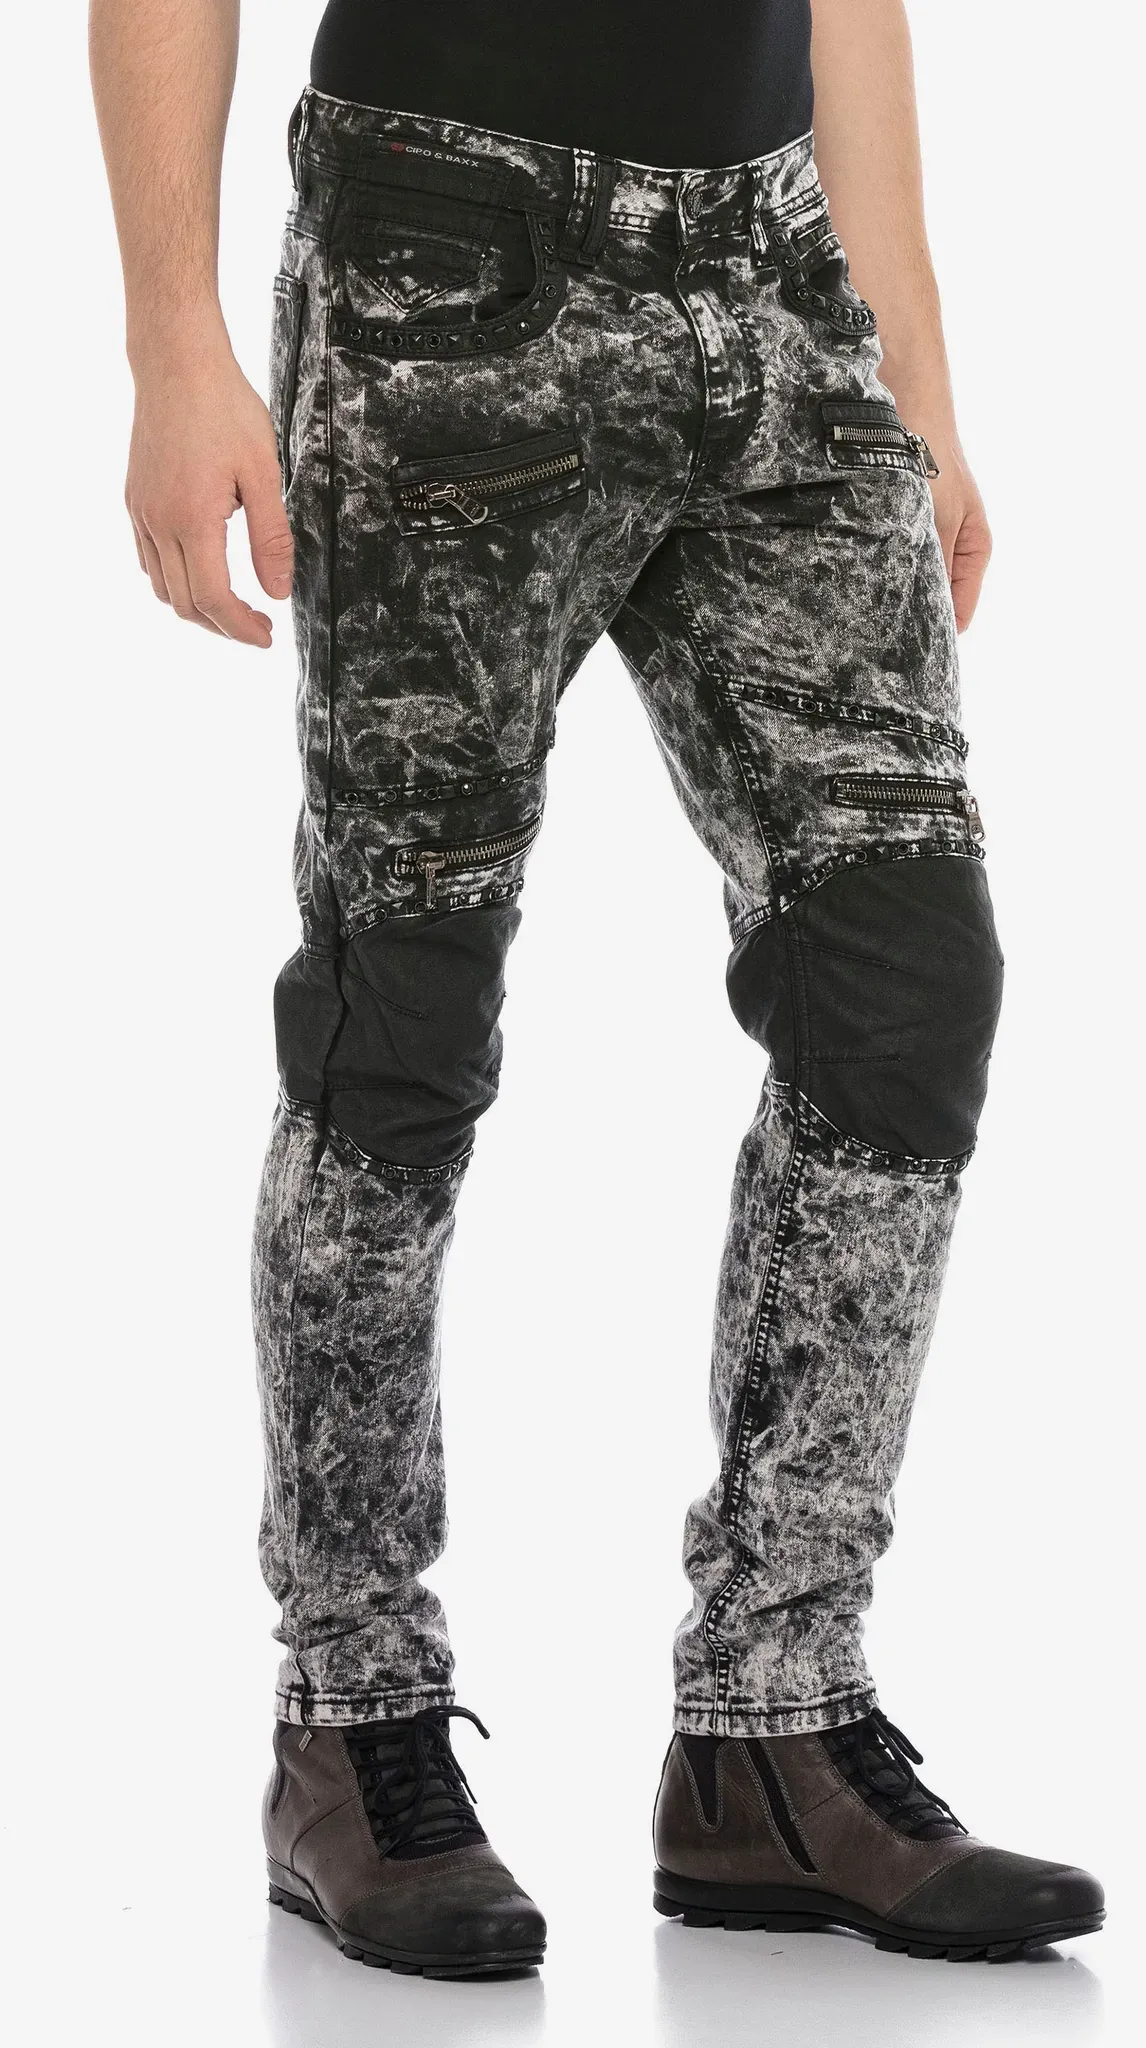 Bequeme Jeans CIPO & BAXX Gr. 33, Länge 34, schwarz (schwarz, grau) Herren Jeans im bequemen Regular-Fit-Schnitt